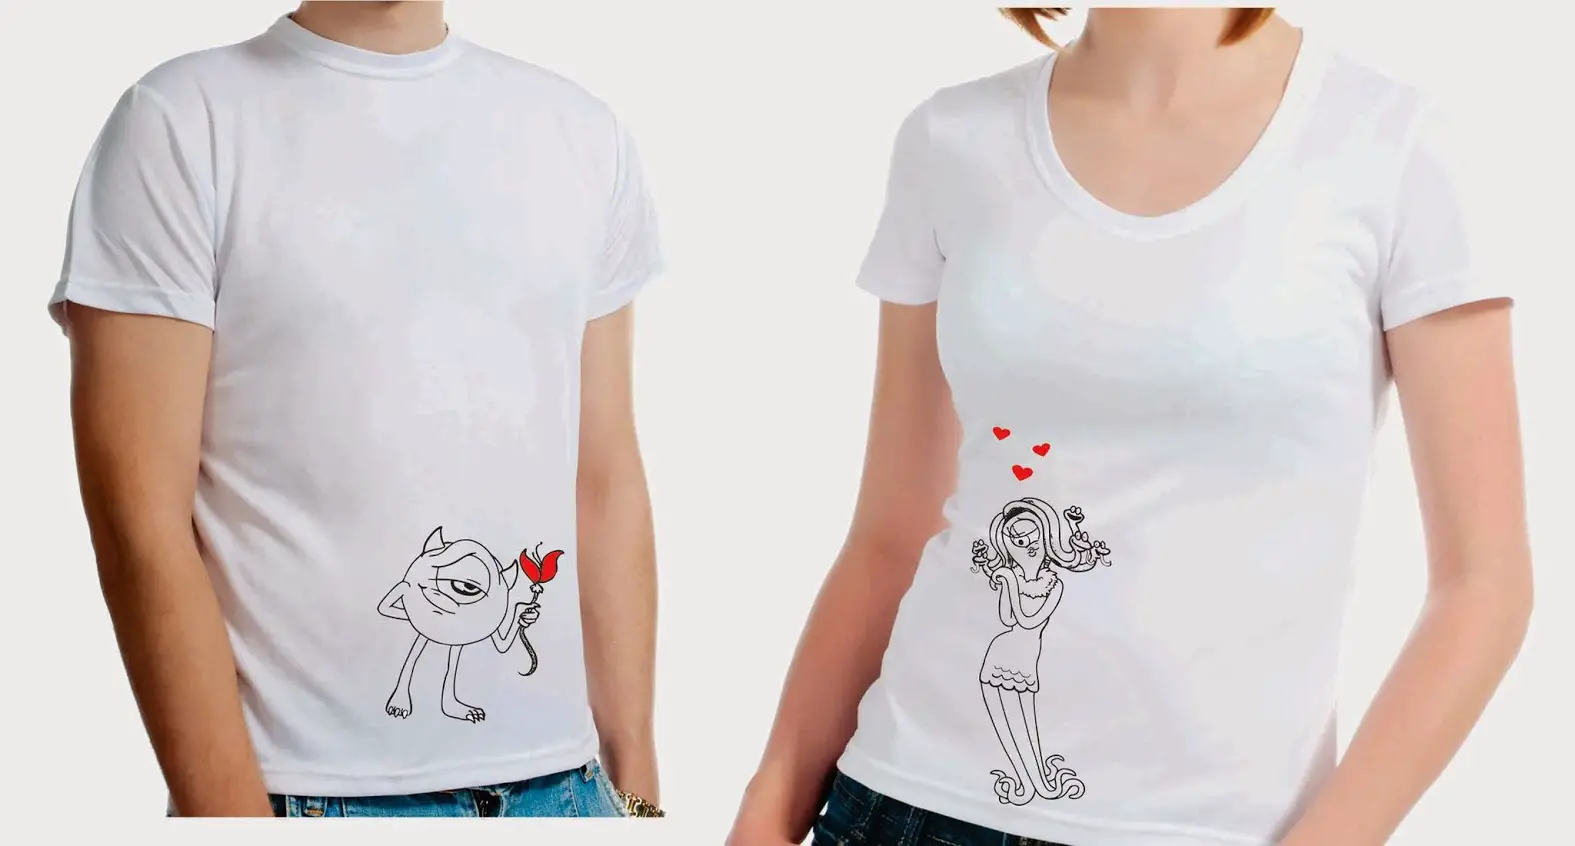 Comorama federación descuento Camisetas para novios ¡para que demuestren su amor a todos!